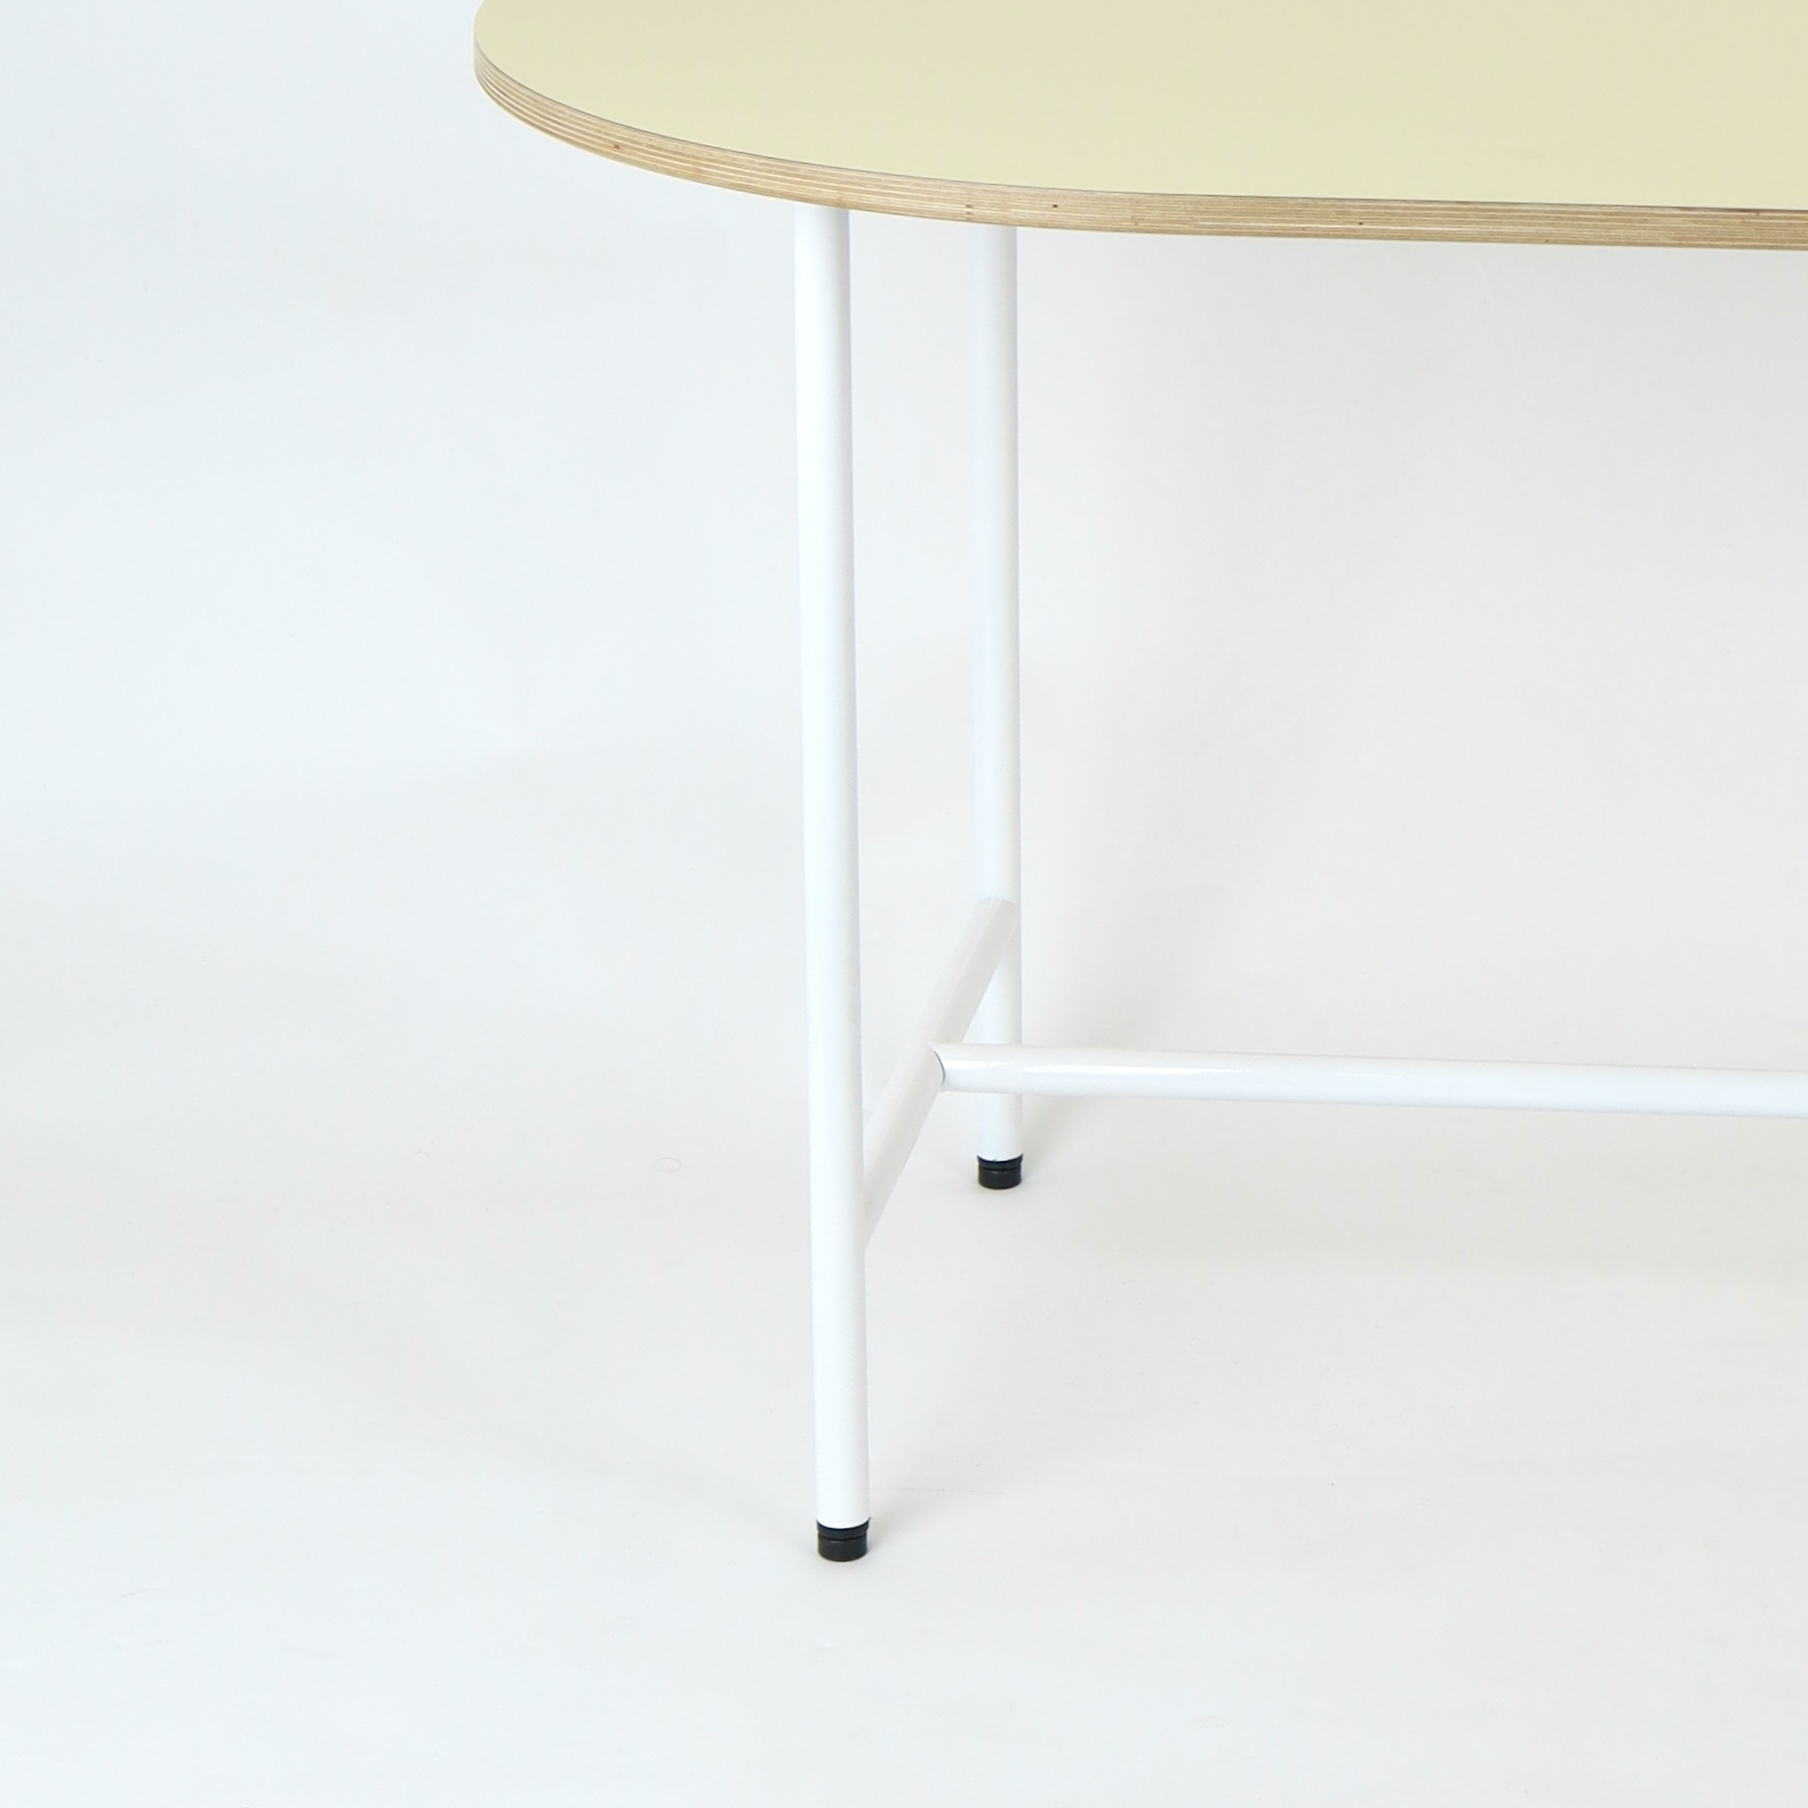 브린그라운 H 타원 호마이카 테이블 1600 x 800 HPL 자작합판 미드 센추리 모던 테이블